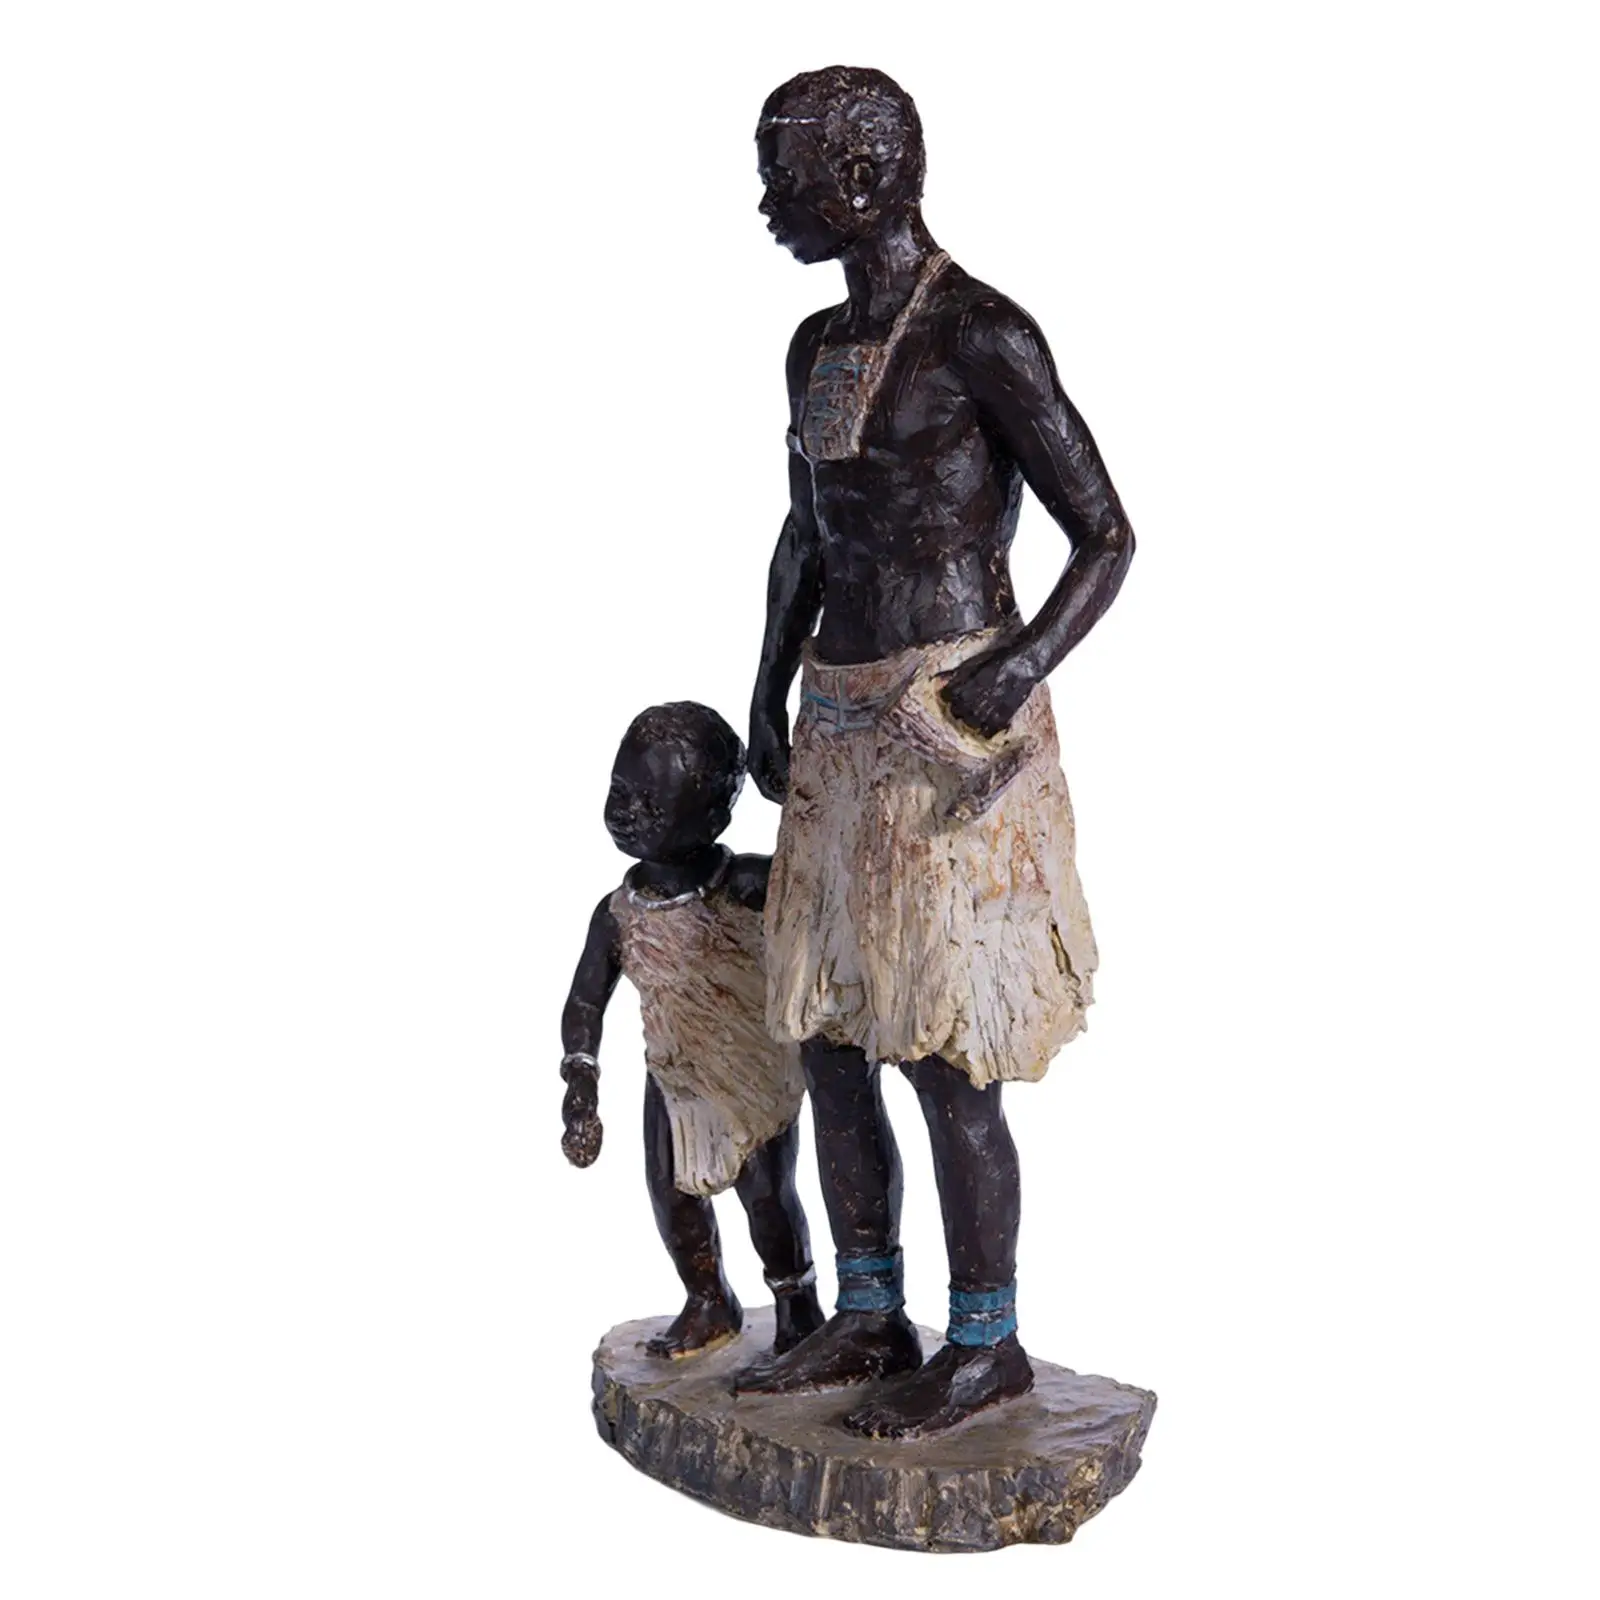 Resin Figurines Decor Table Centerpieces Art African Statue Sculpture Decor